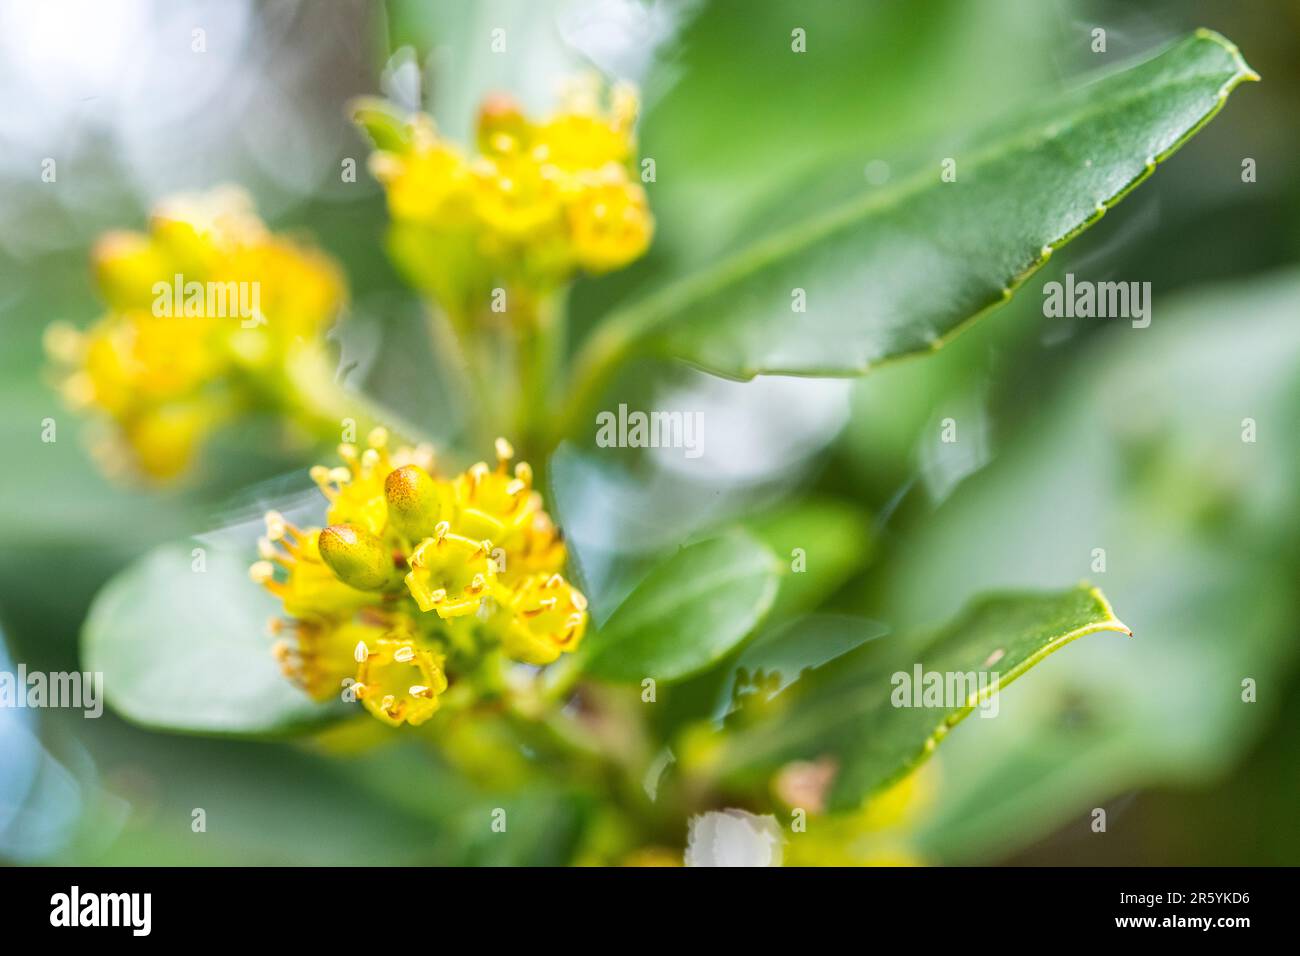 Rhamnus alaternus is a species of flowering plant in the buckthorn family Rhamnaceae, known as Italian buckthorn or Mediterranean buckthorn. Stock Photo